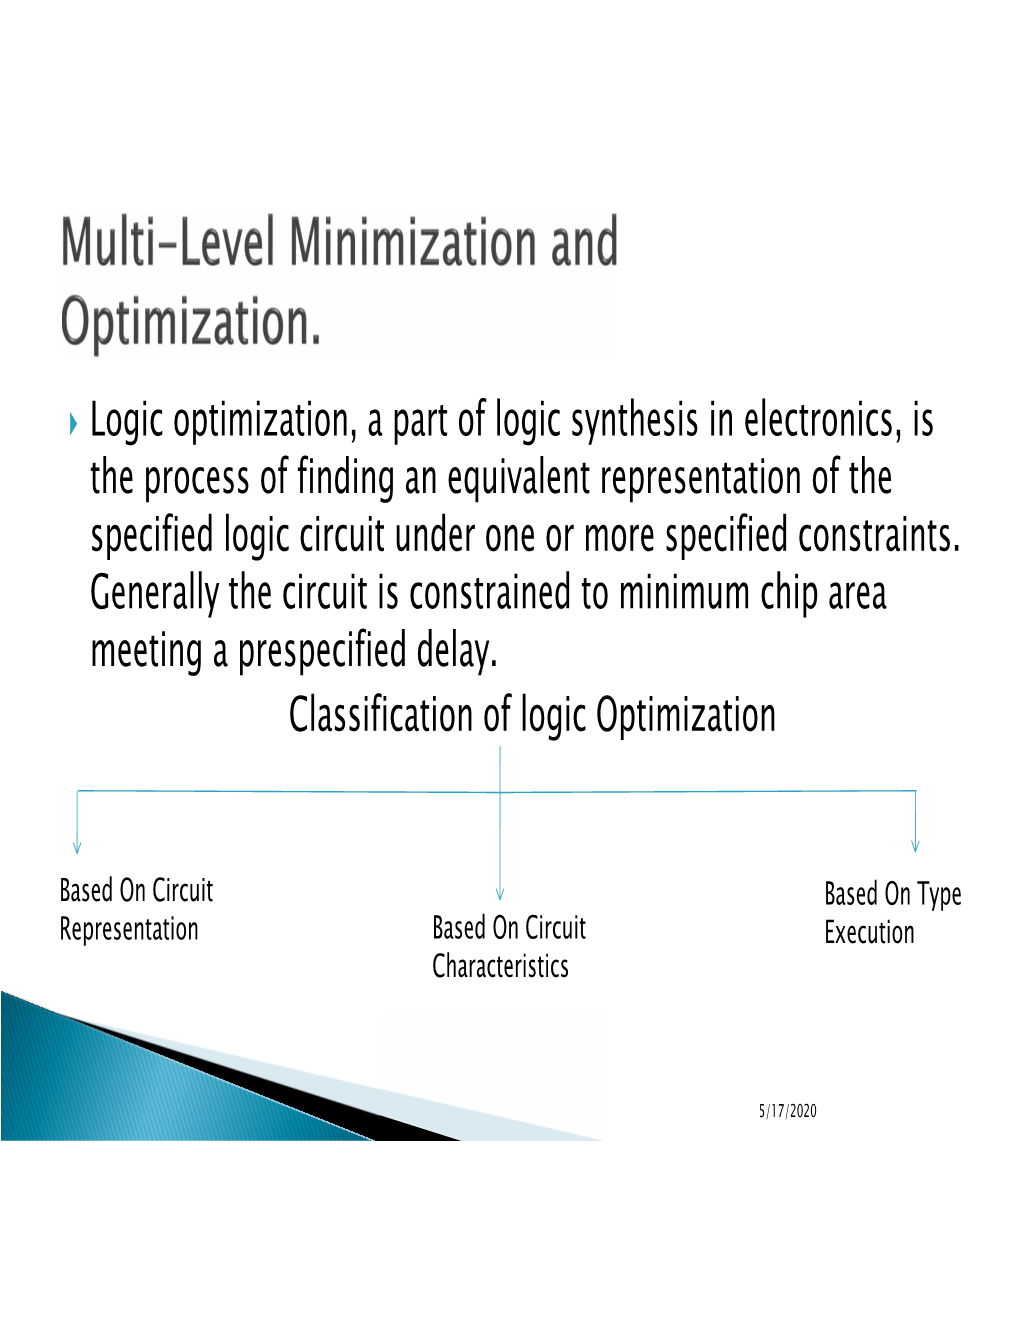 Multi-Level Minimization and Optimization